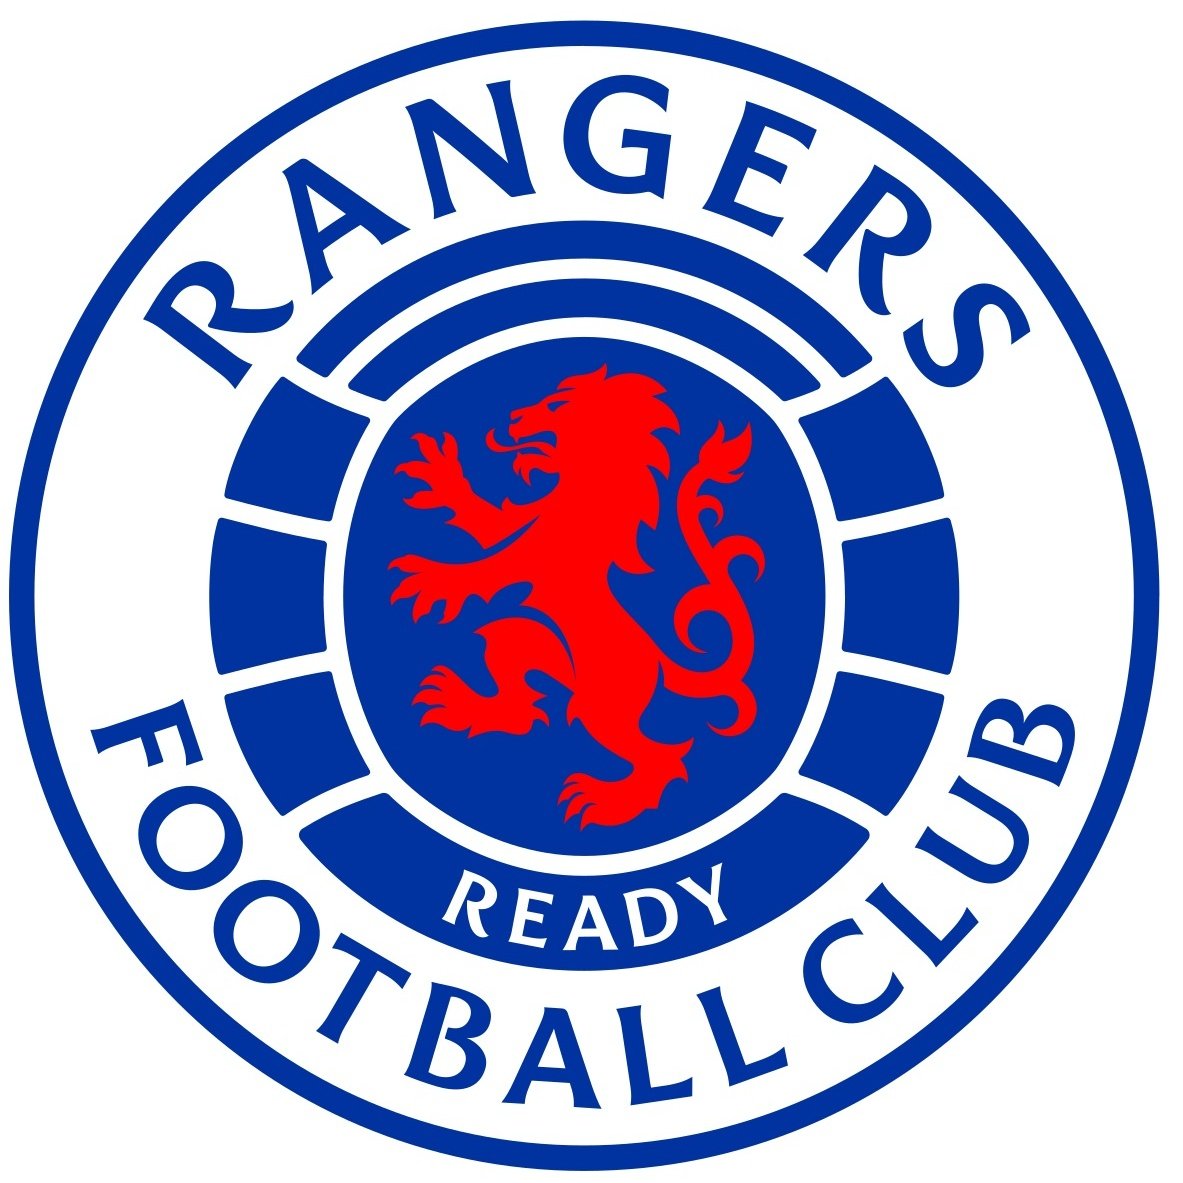 Escudo del Rangers Fem